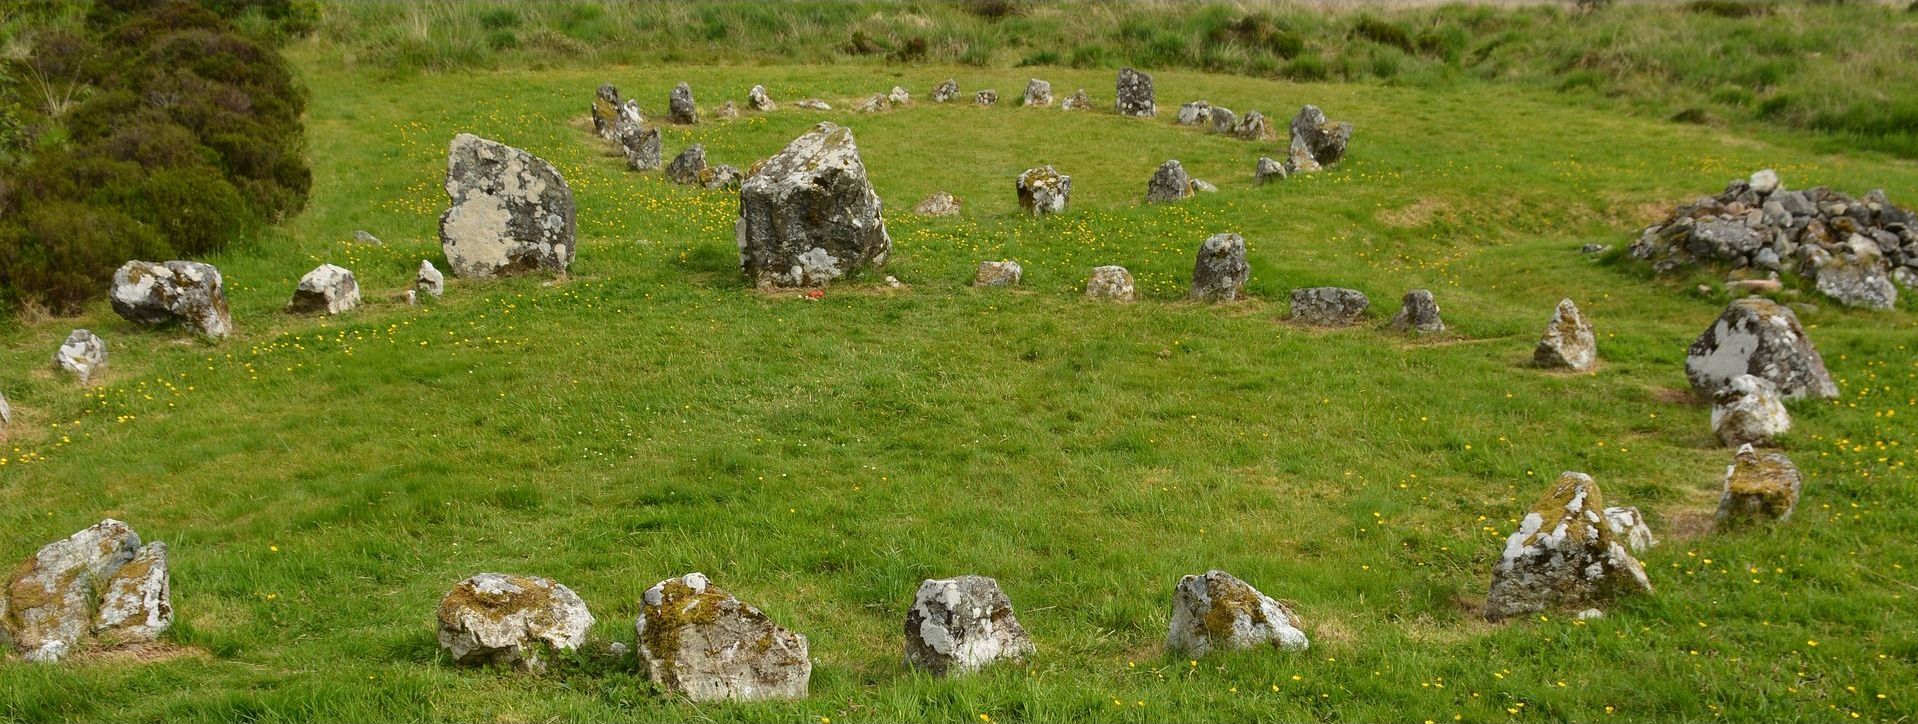 Stone Circle, Ireland